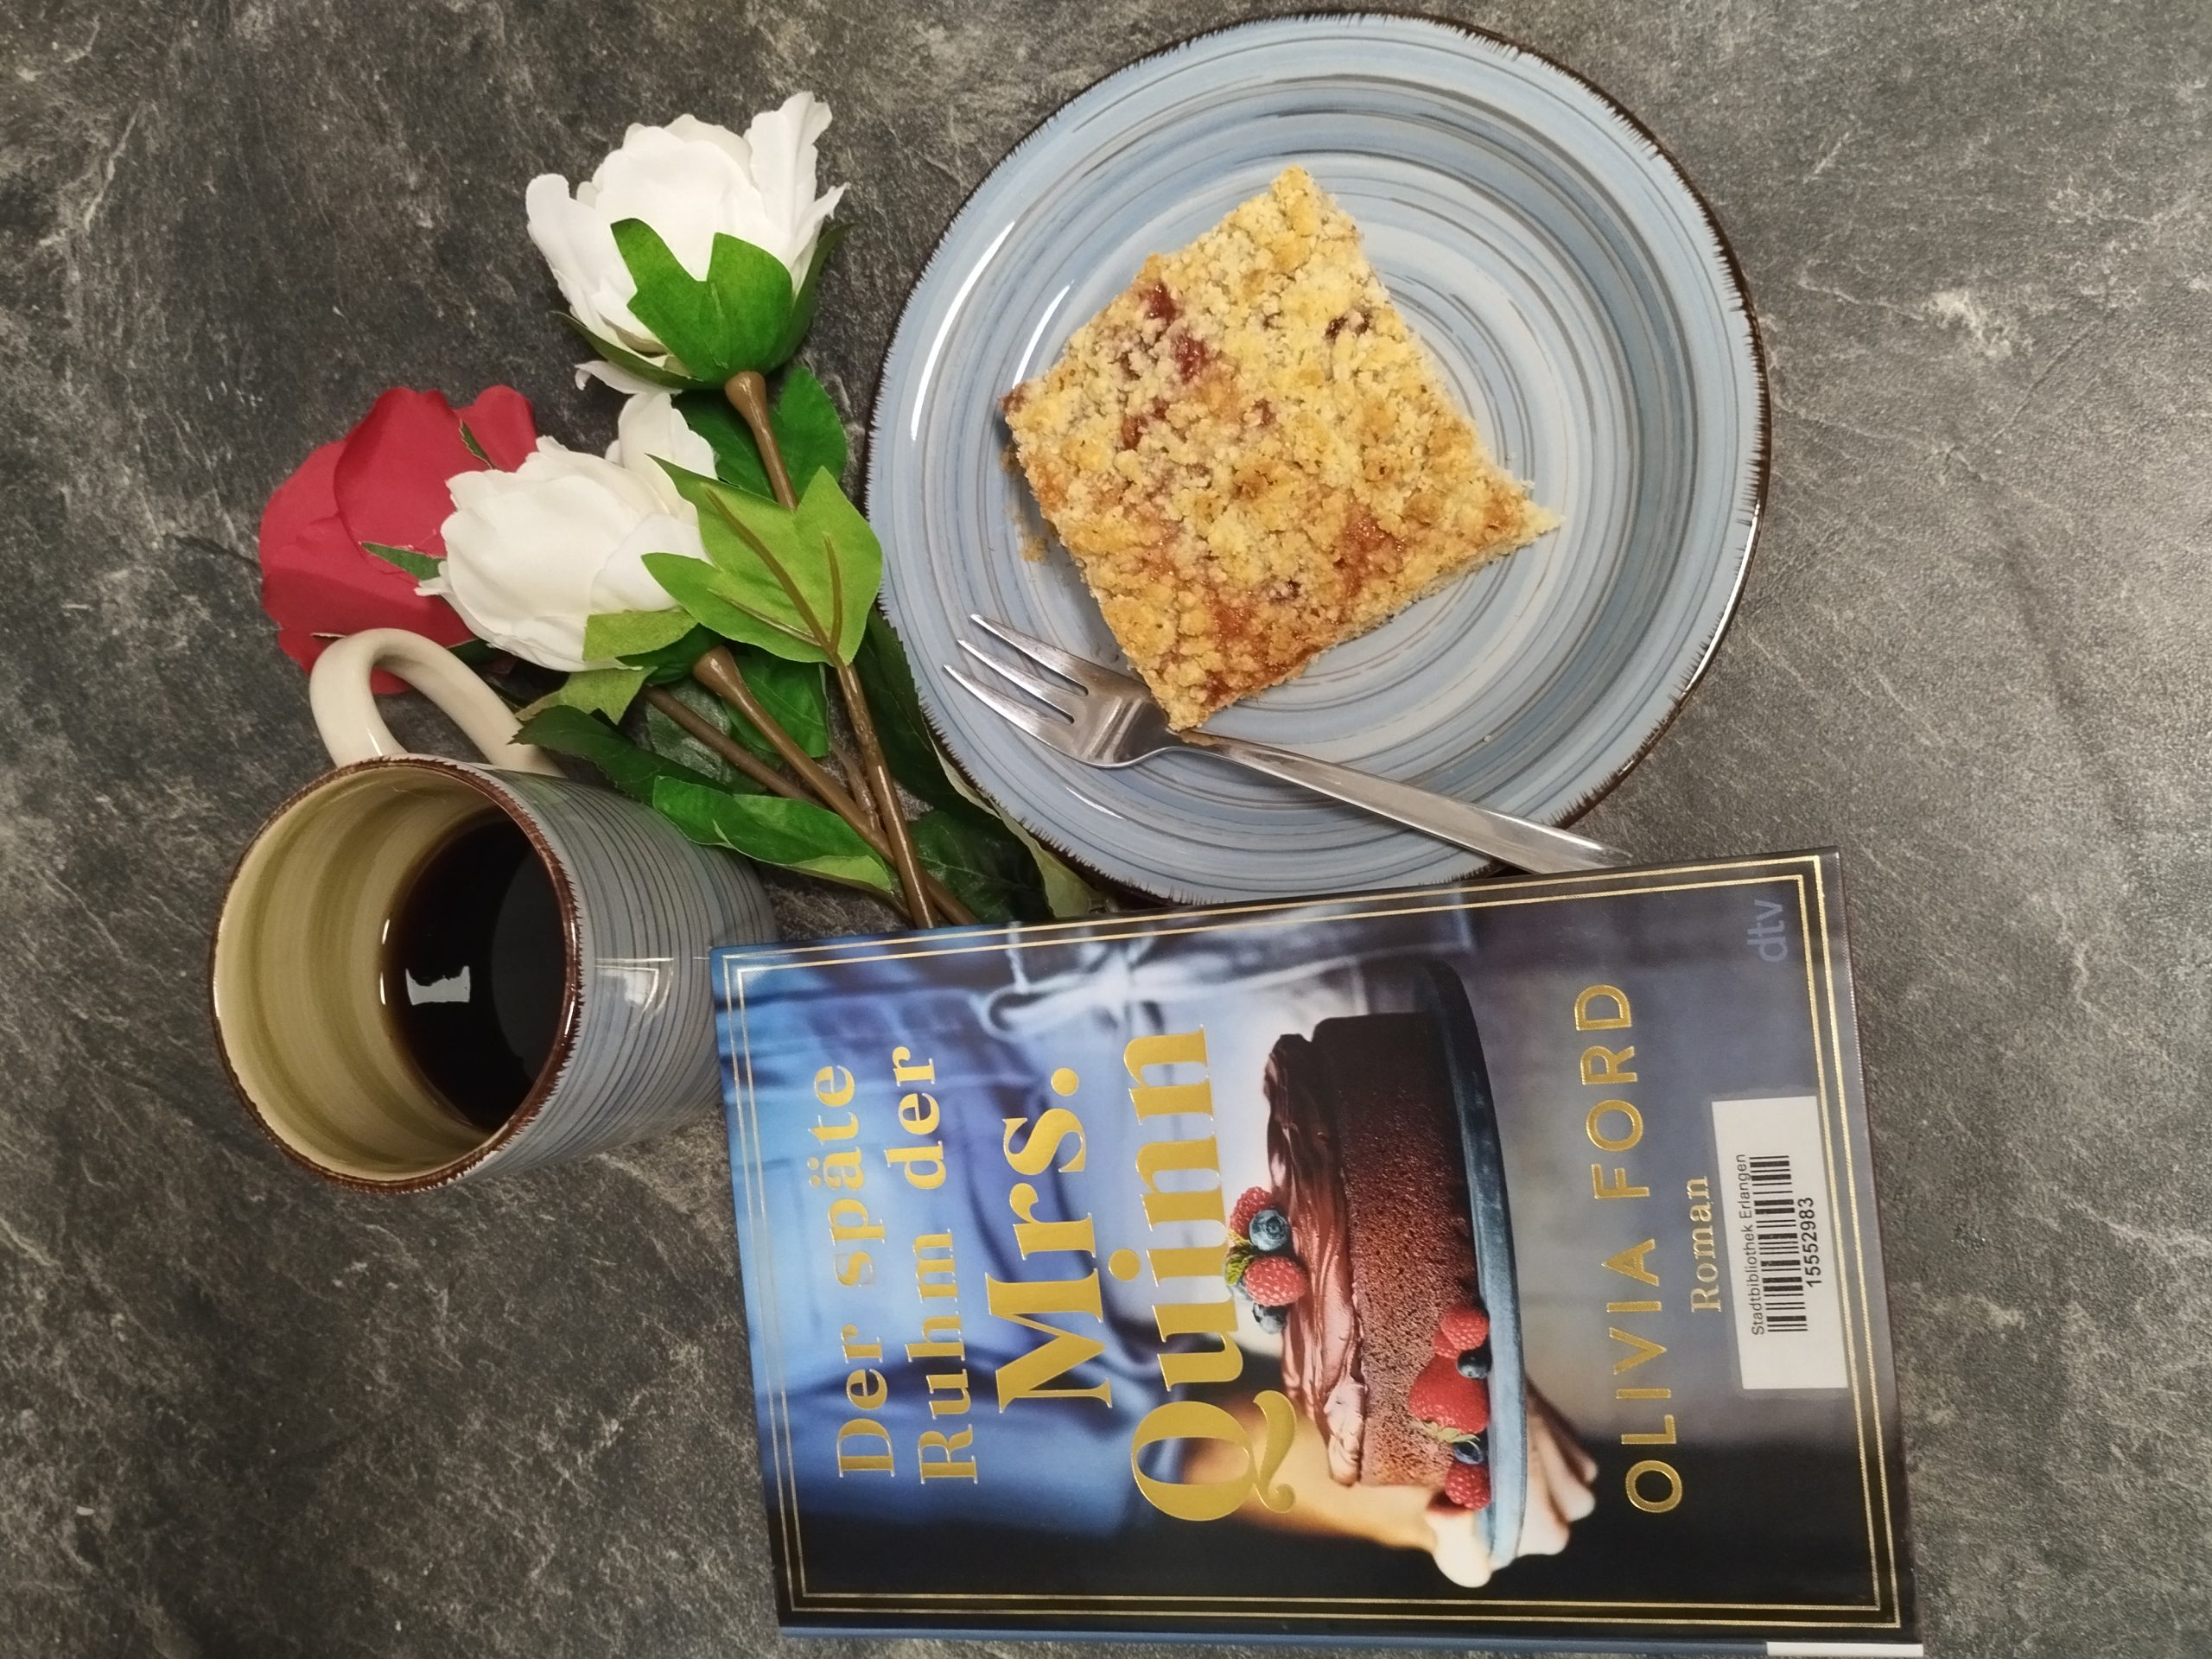 Buch Der späte Ruhm der Mrs. Quinn von Olivia Ford mit Kaffee, Kuchen, Blumen